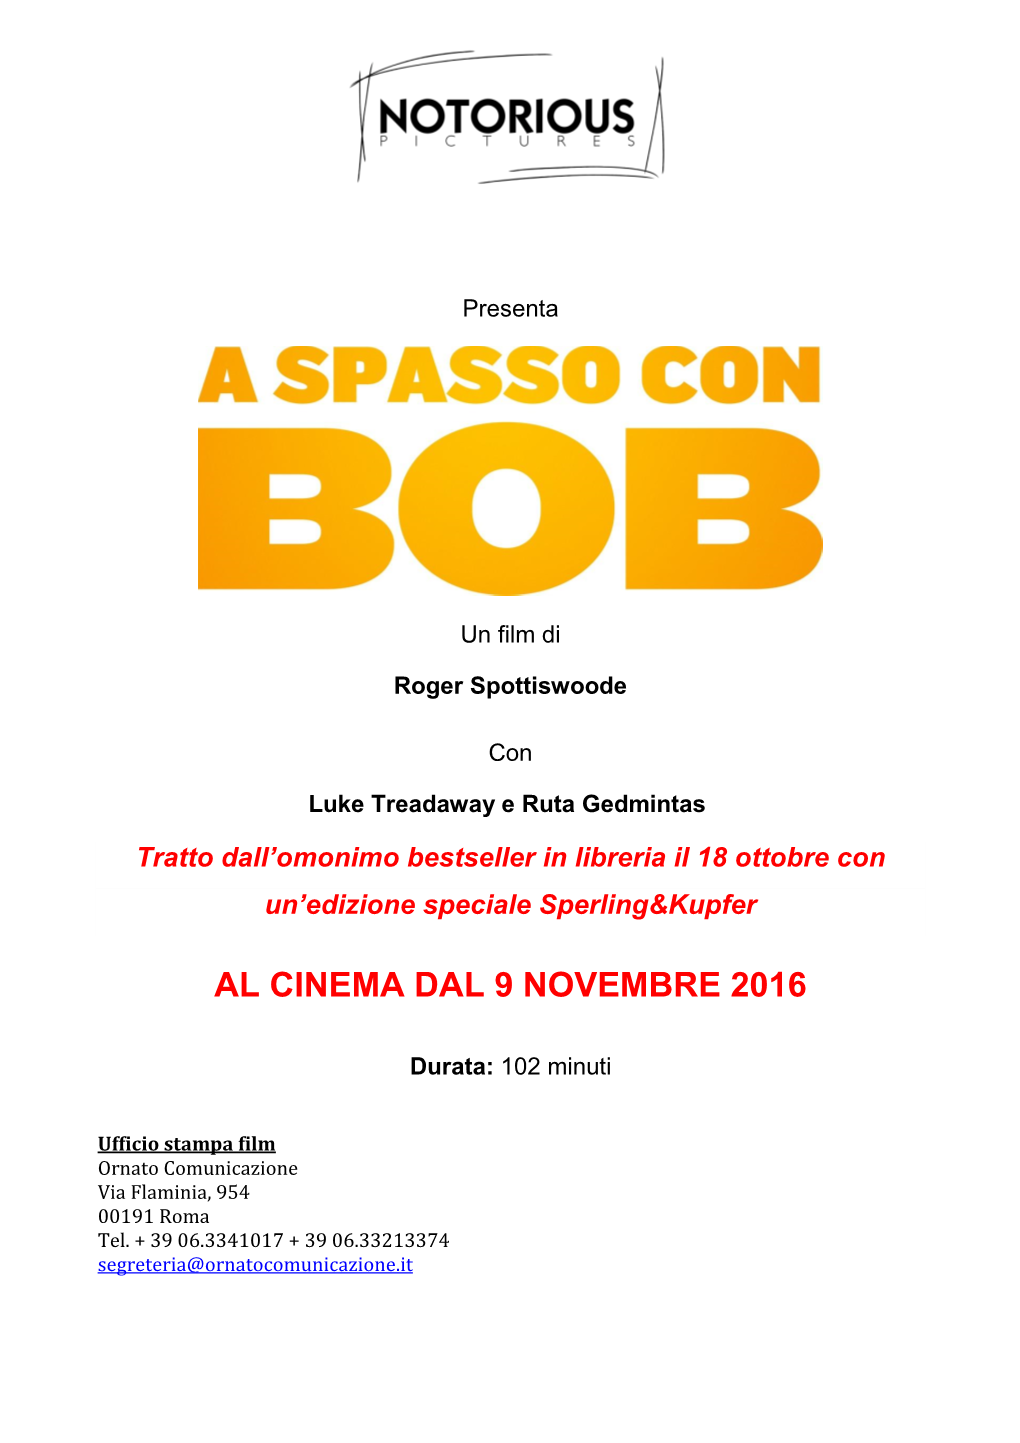 Al Cinema Dal 9 Novembre 2016